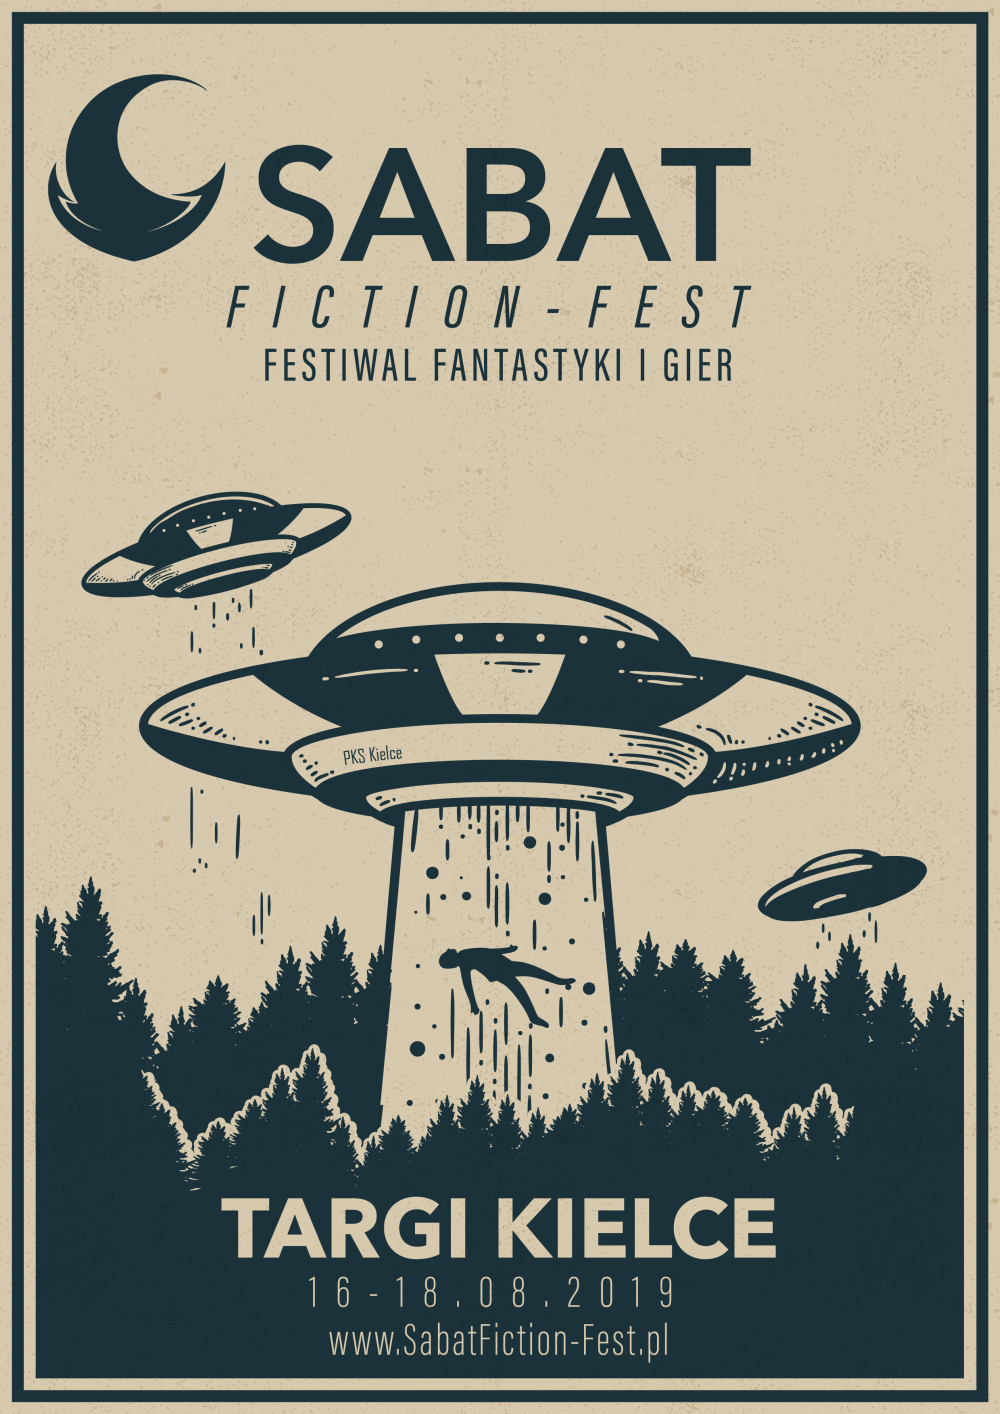 Sabat Fiction-Fest